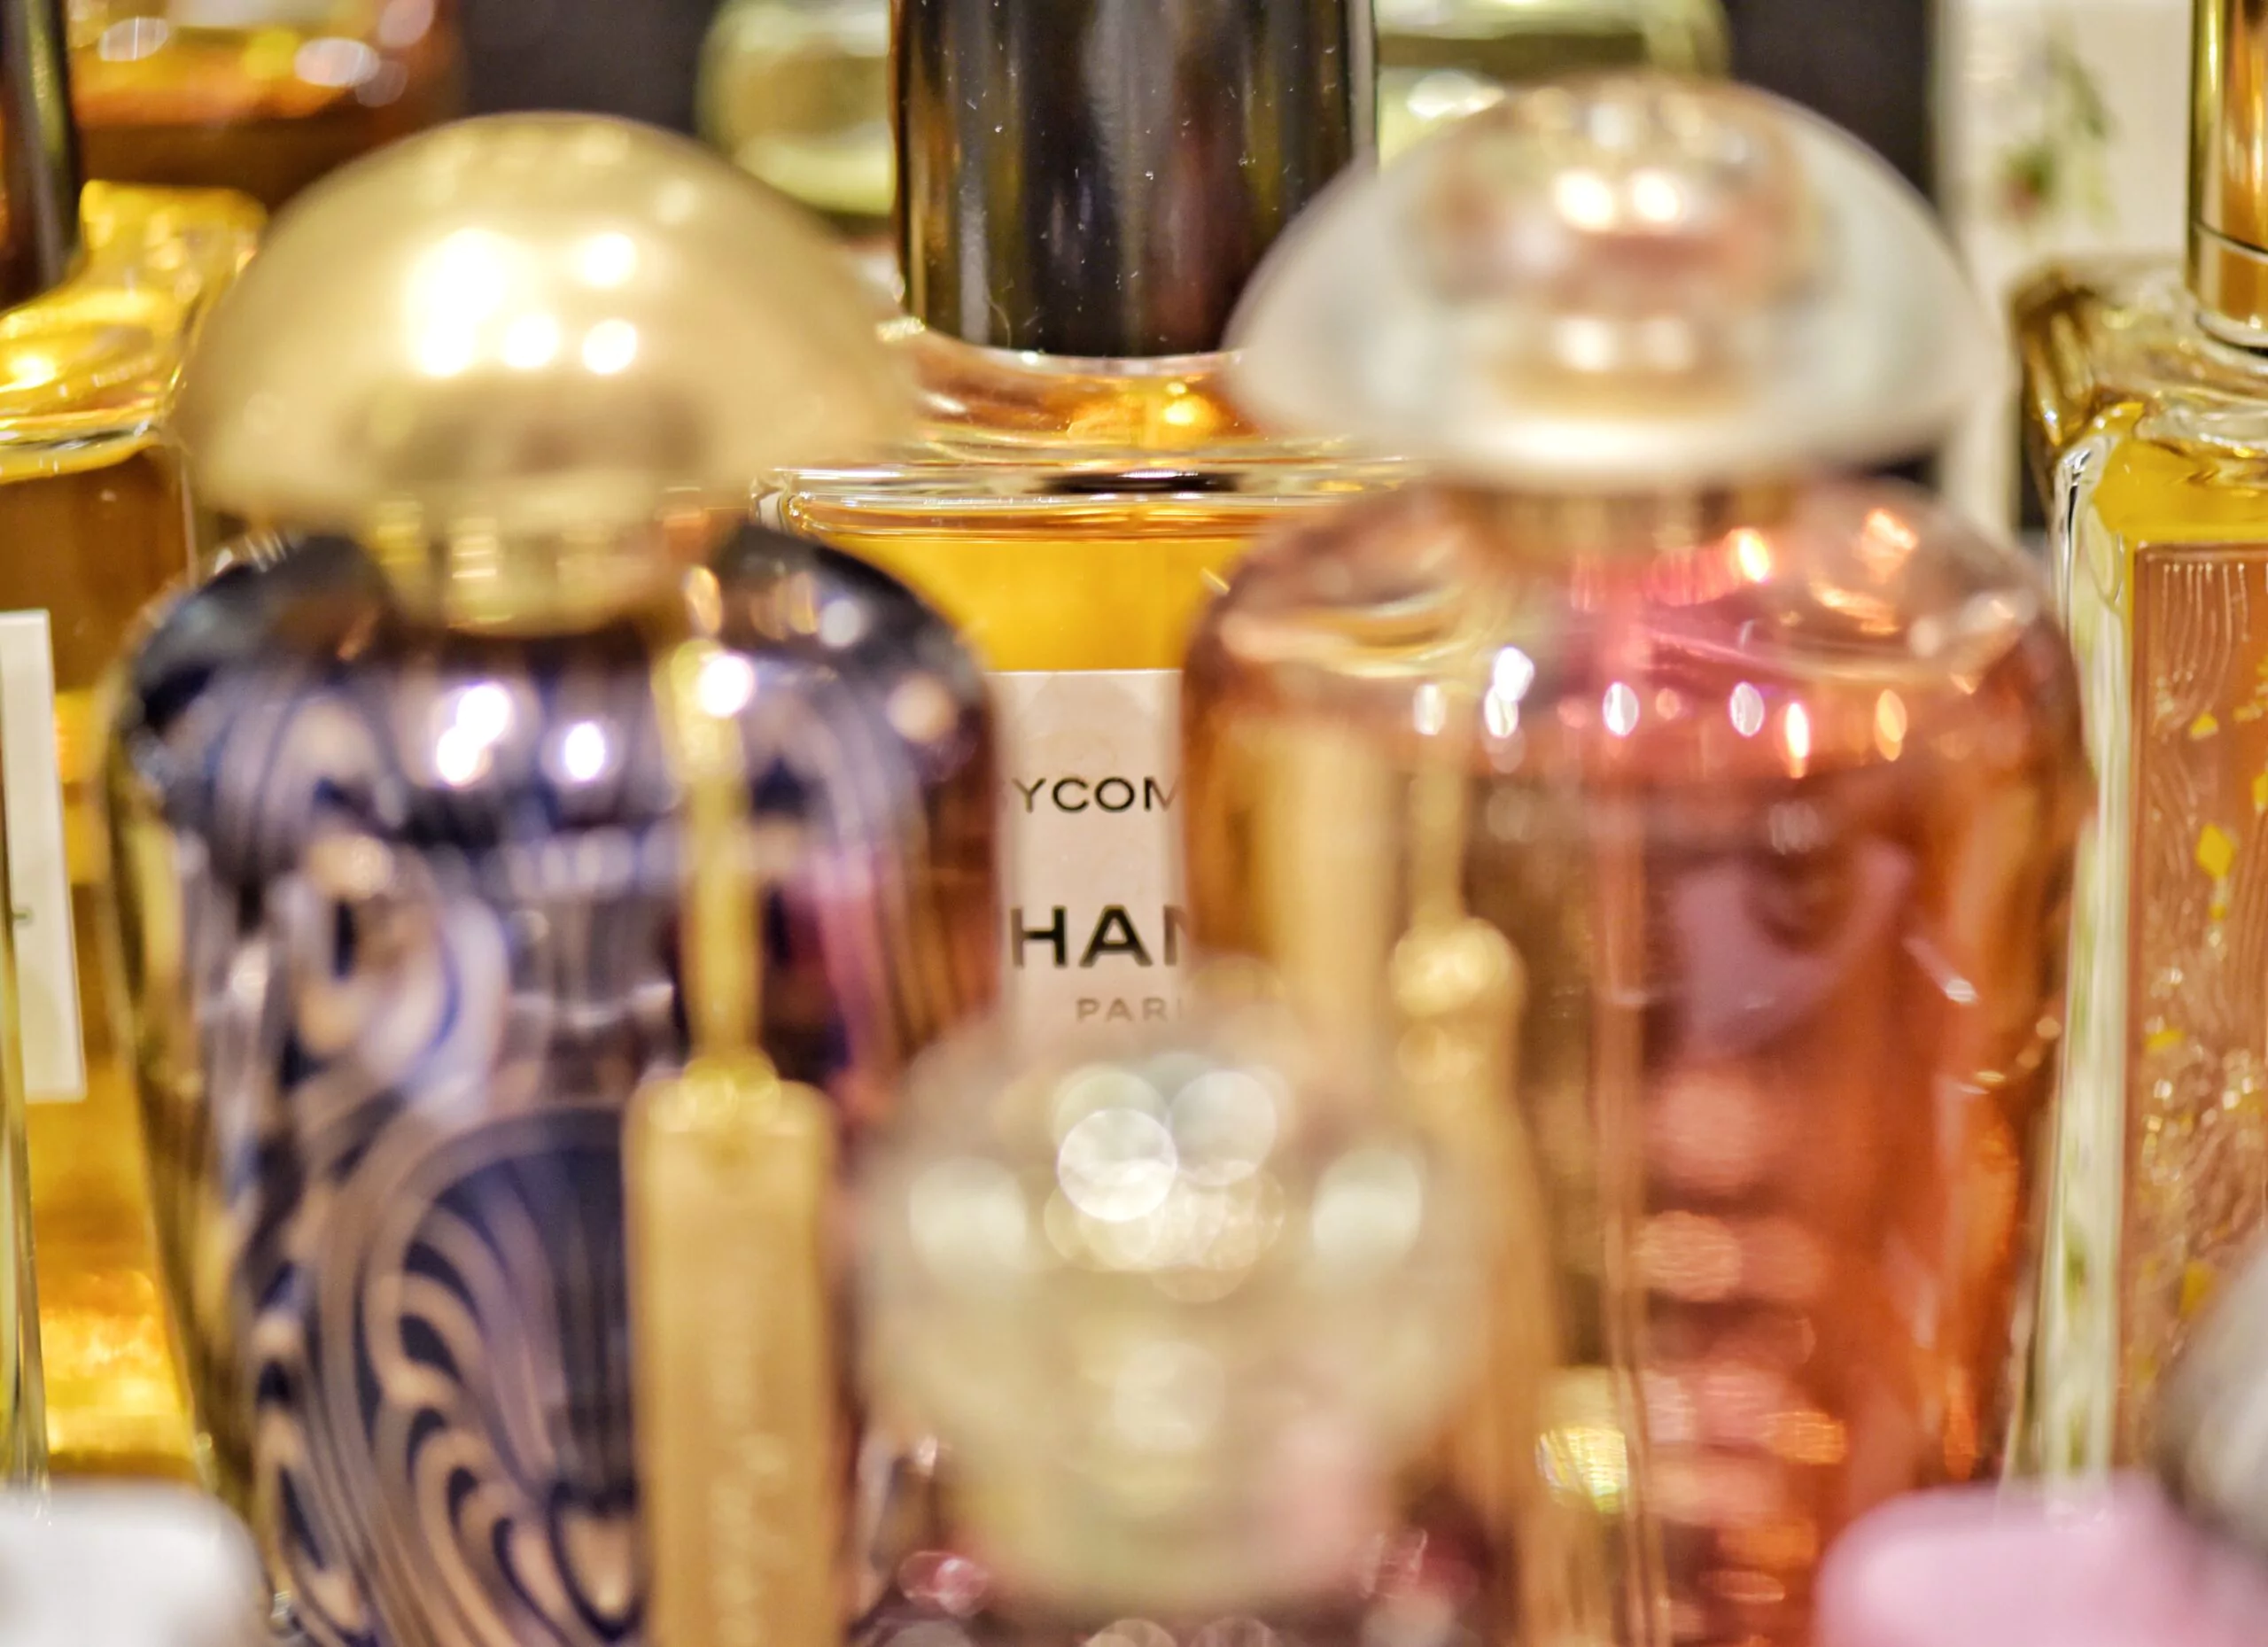 Parfumfalcones in dunkelviolett mit goldenem Verschluss sowie in rosarot mit gläsernem Verschluss. Dahinter ist ein Flacone von Chanel erkennbar